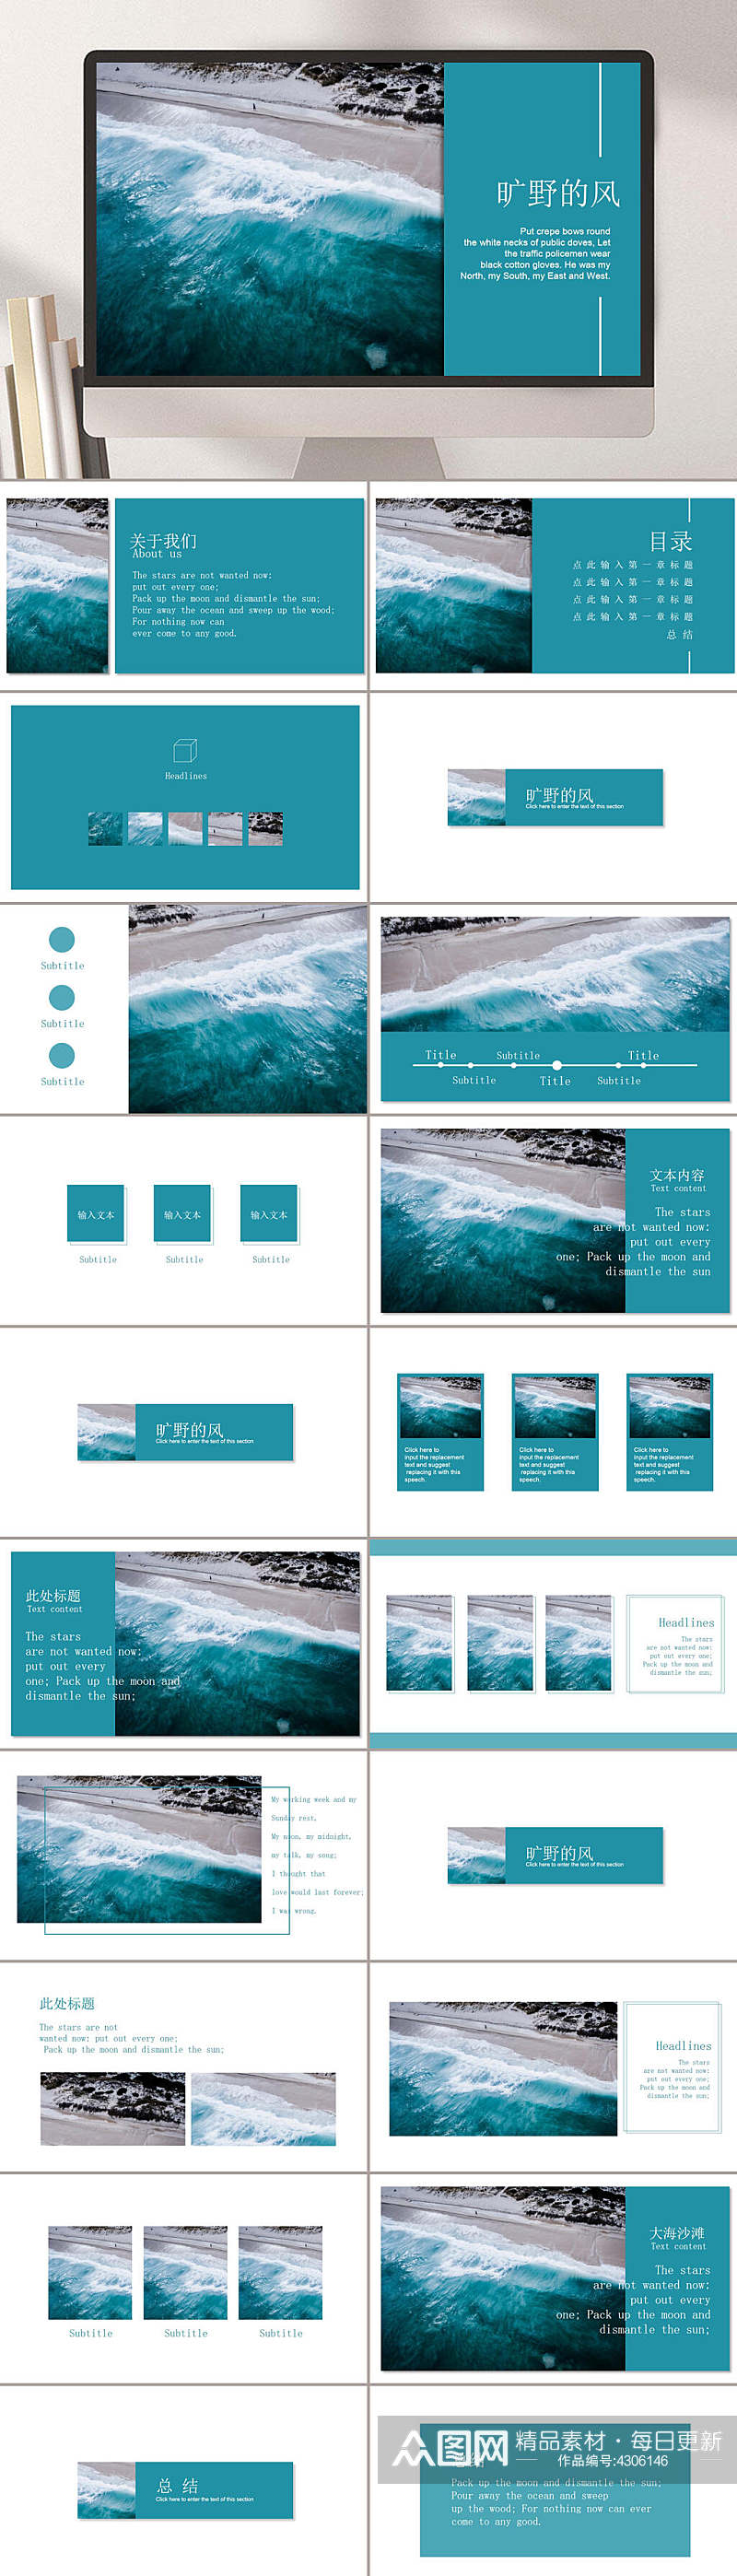 亮蓝色海浪旷野的风旅行画册PPT素材